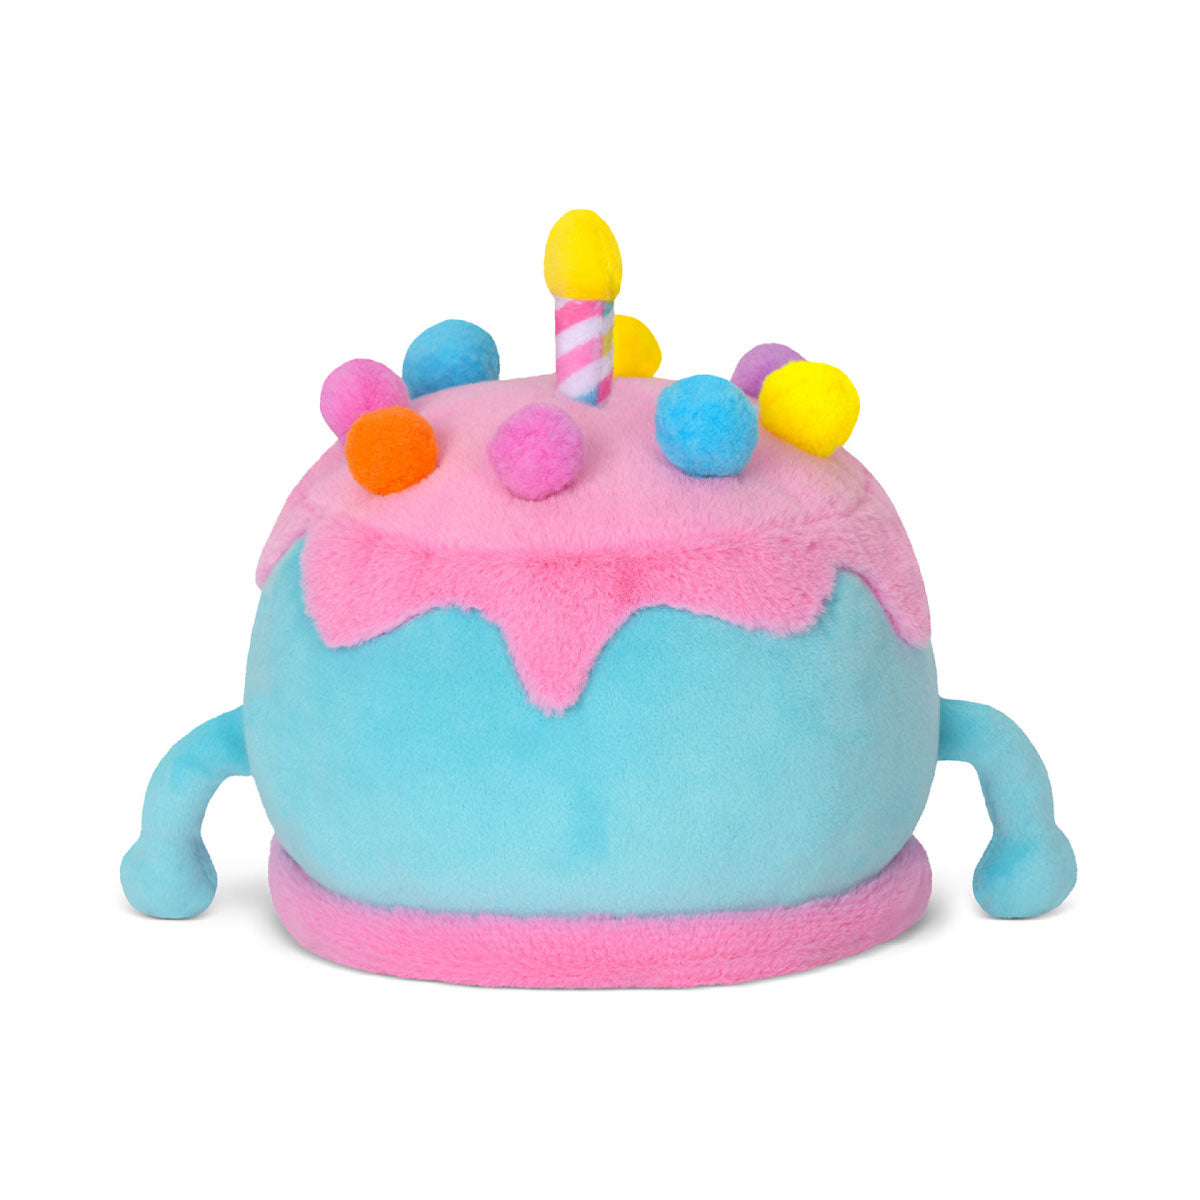 iScream Birthday Cake Mini Plush